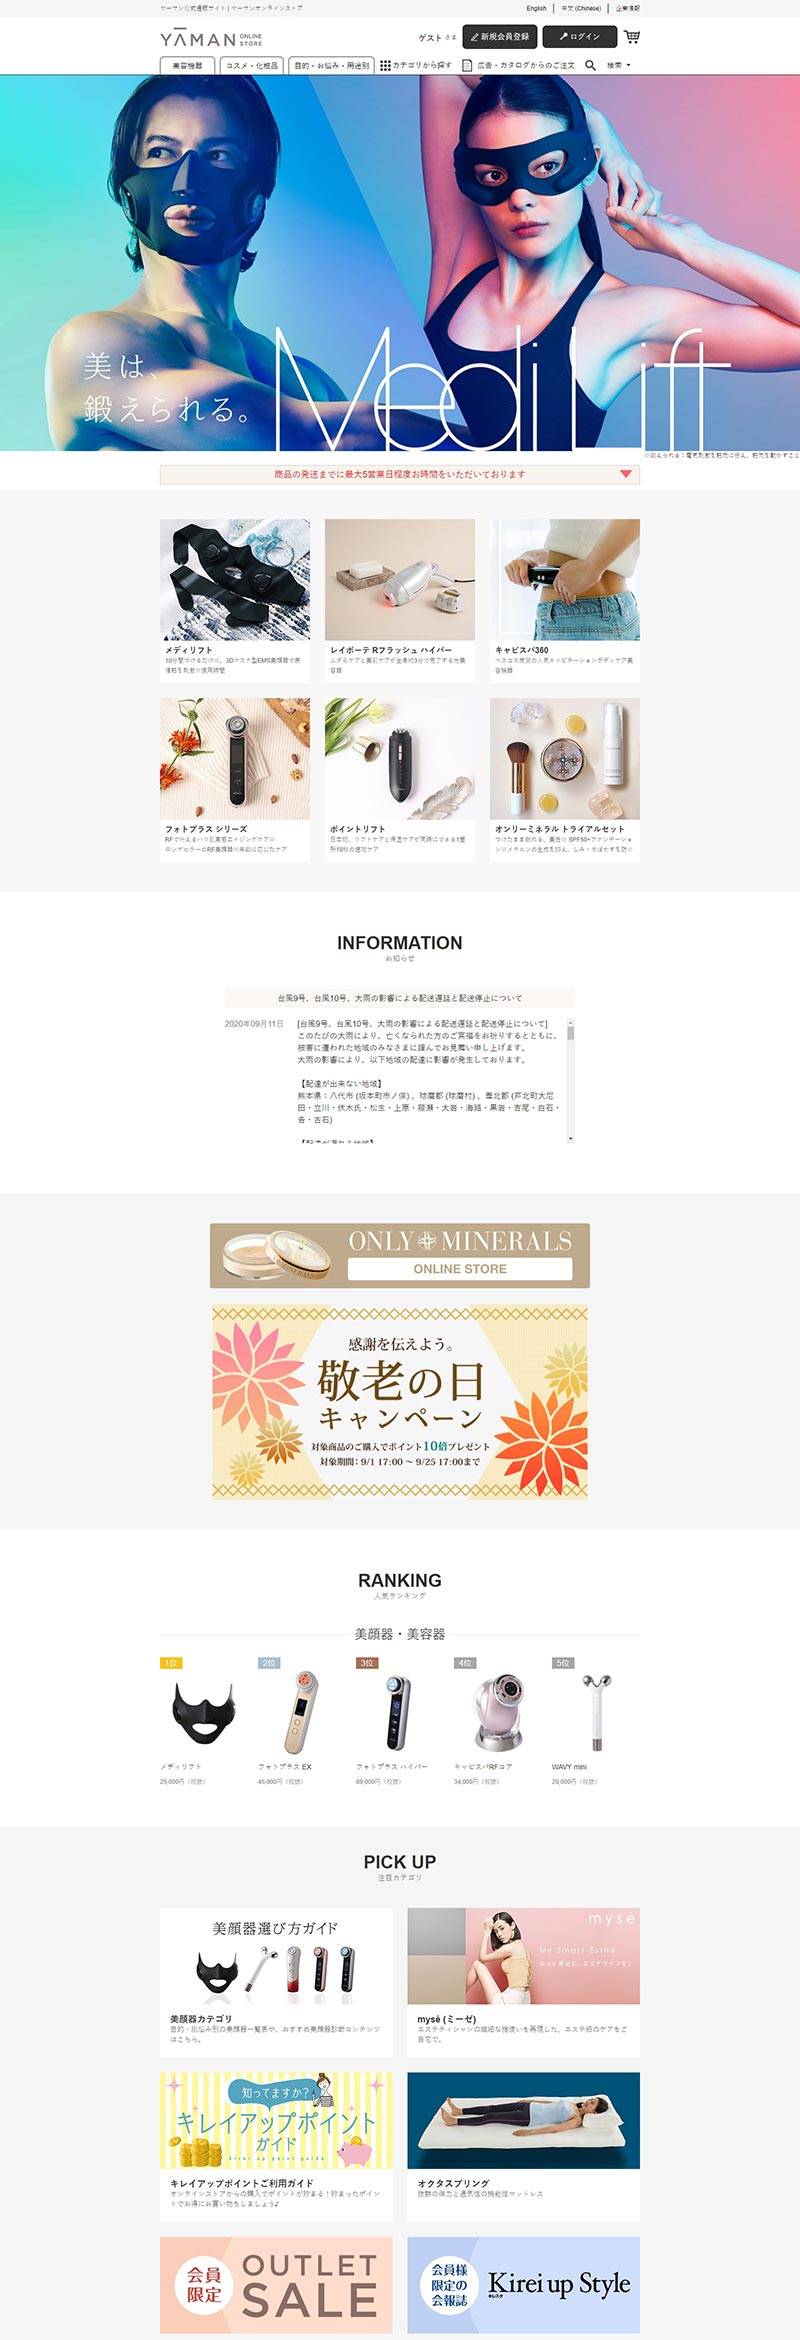 YA-MAN 雅萌-日本家美容电器品牌购物网站